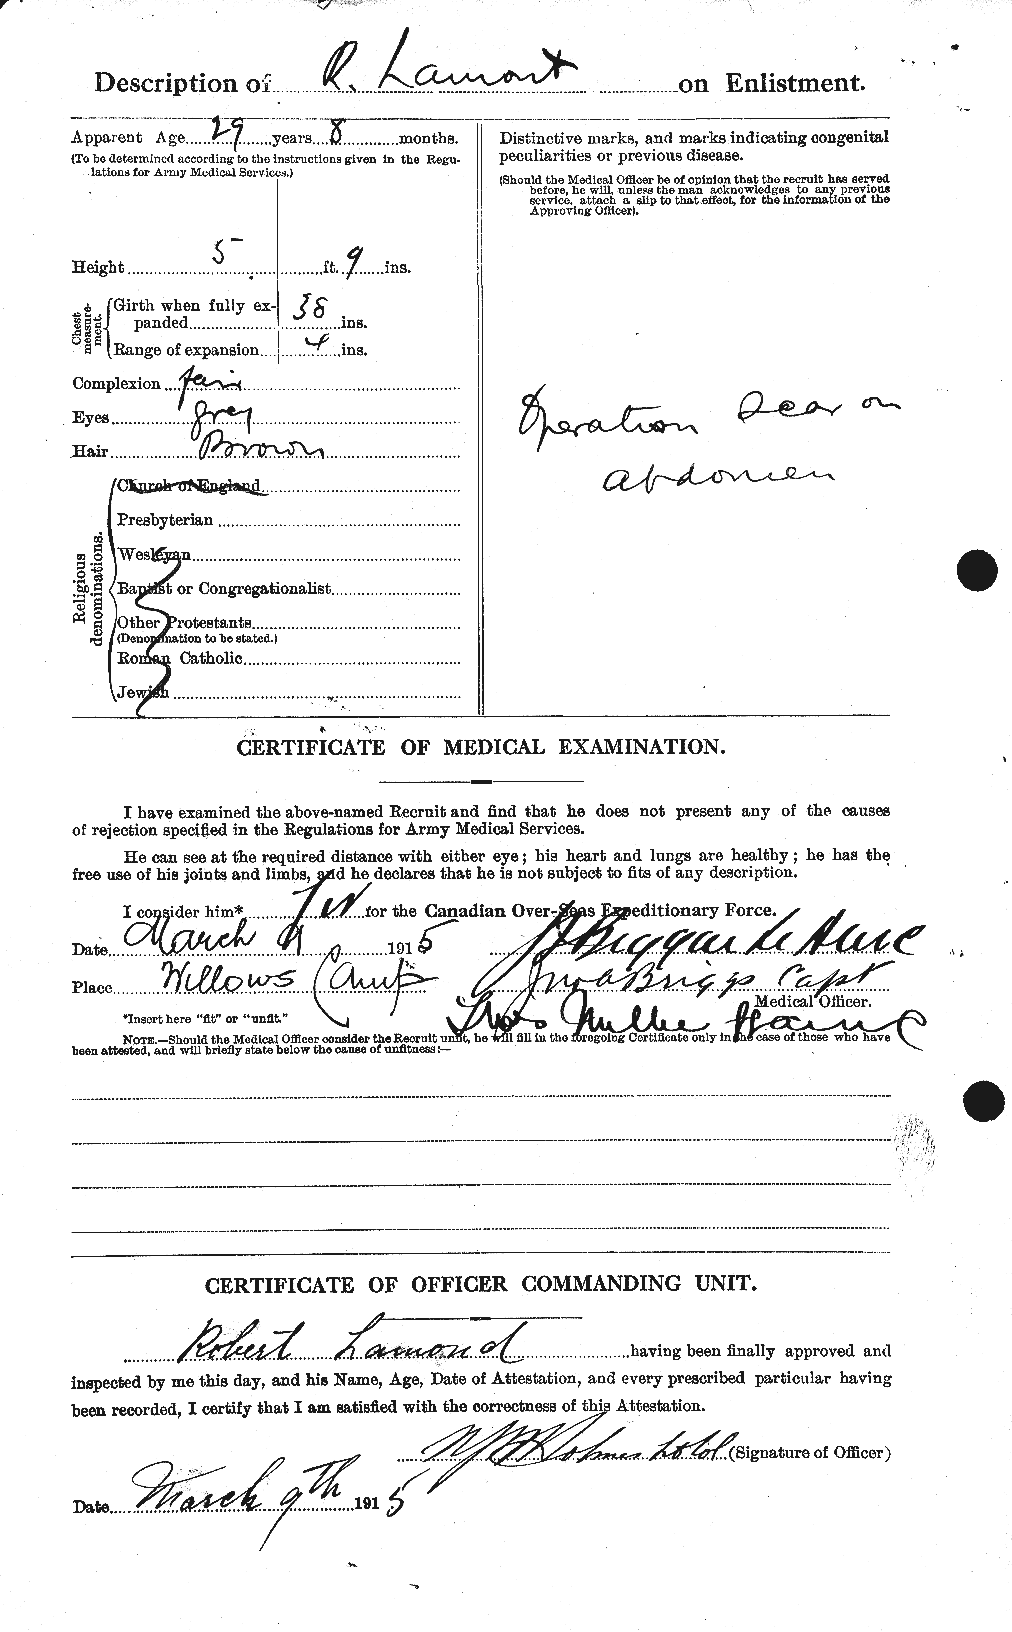 Dossiers du Personnel de la Première Guerre mondiale - CEC 446087b